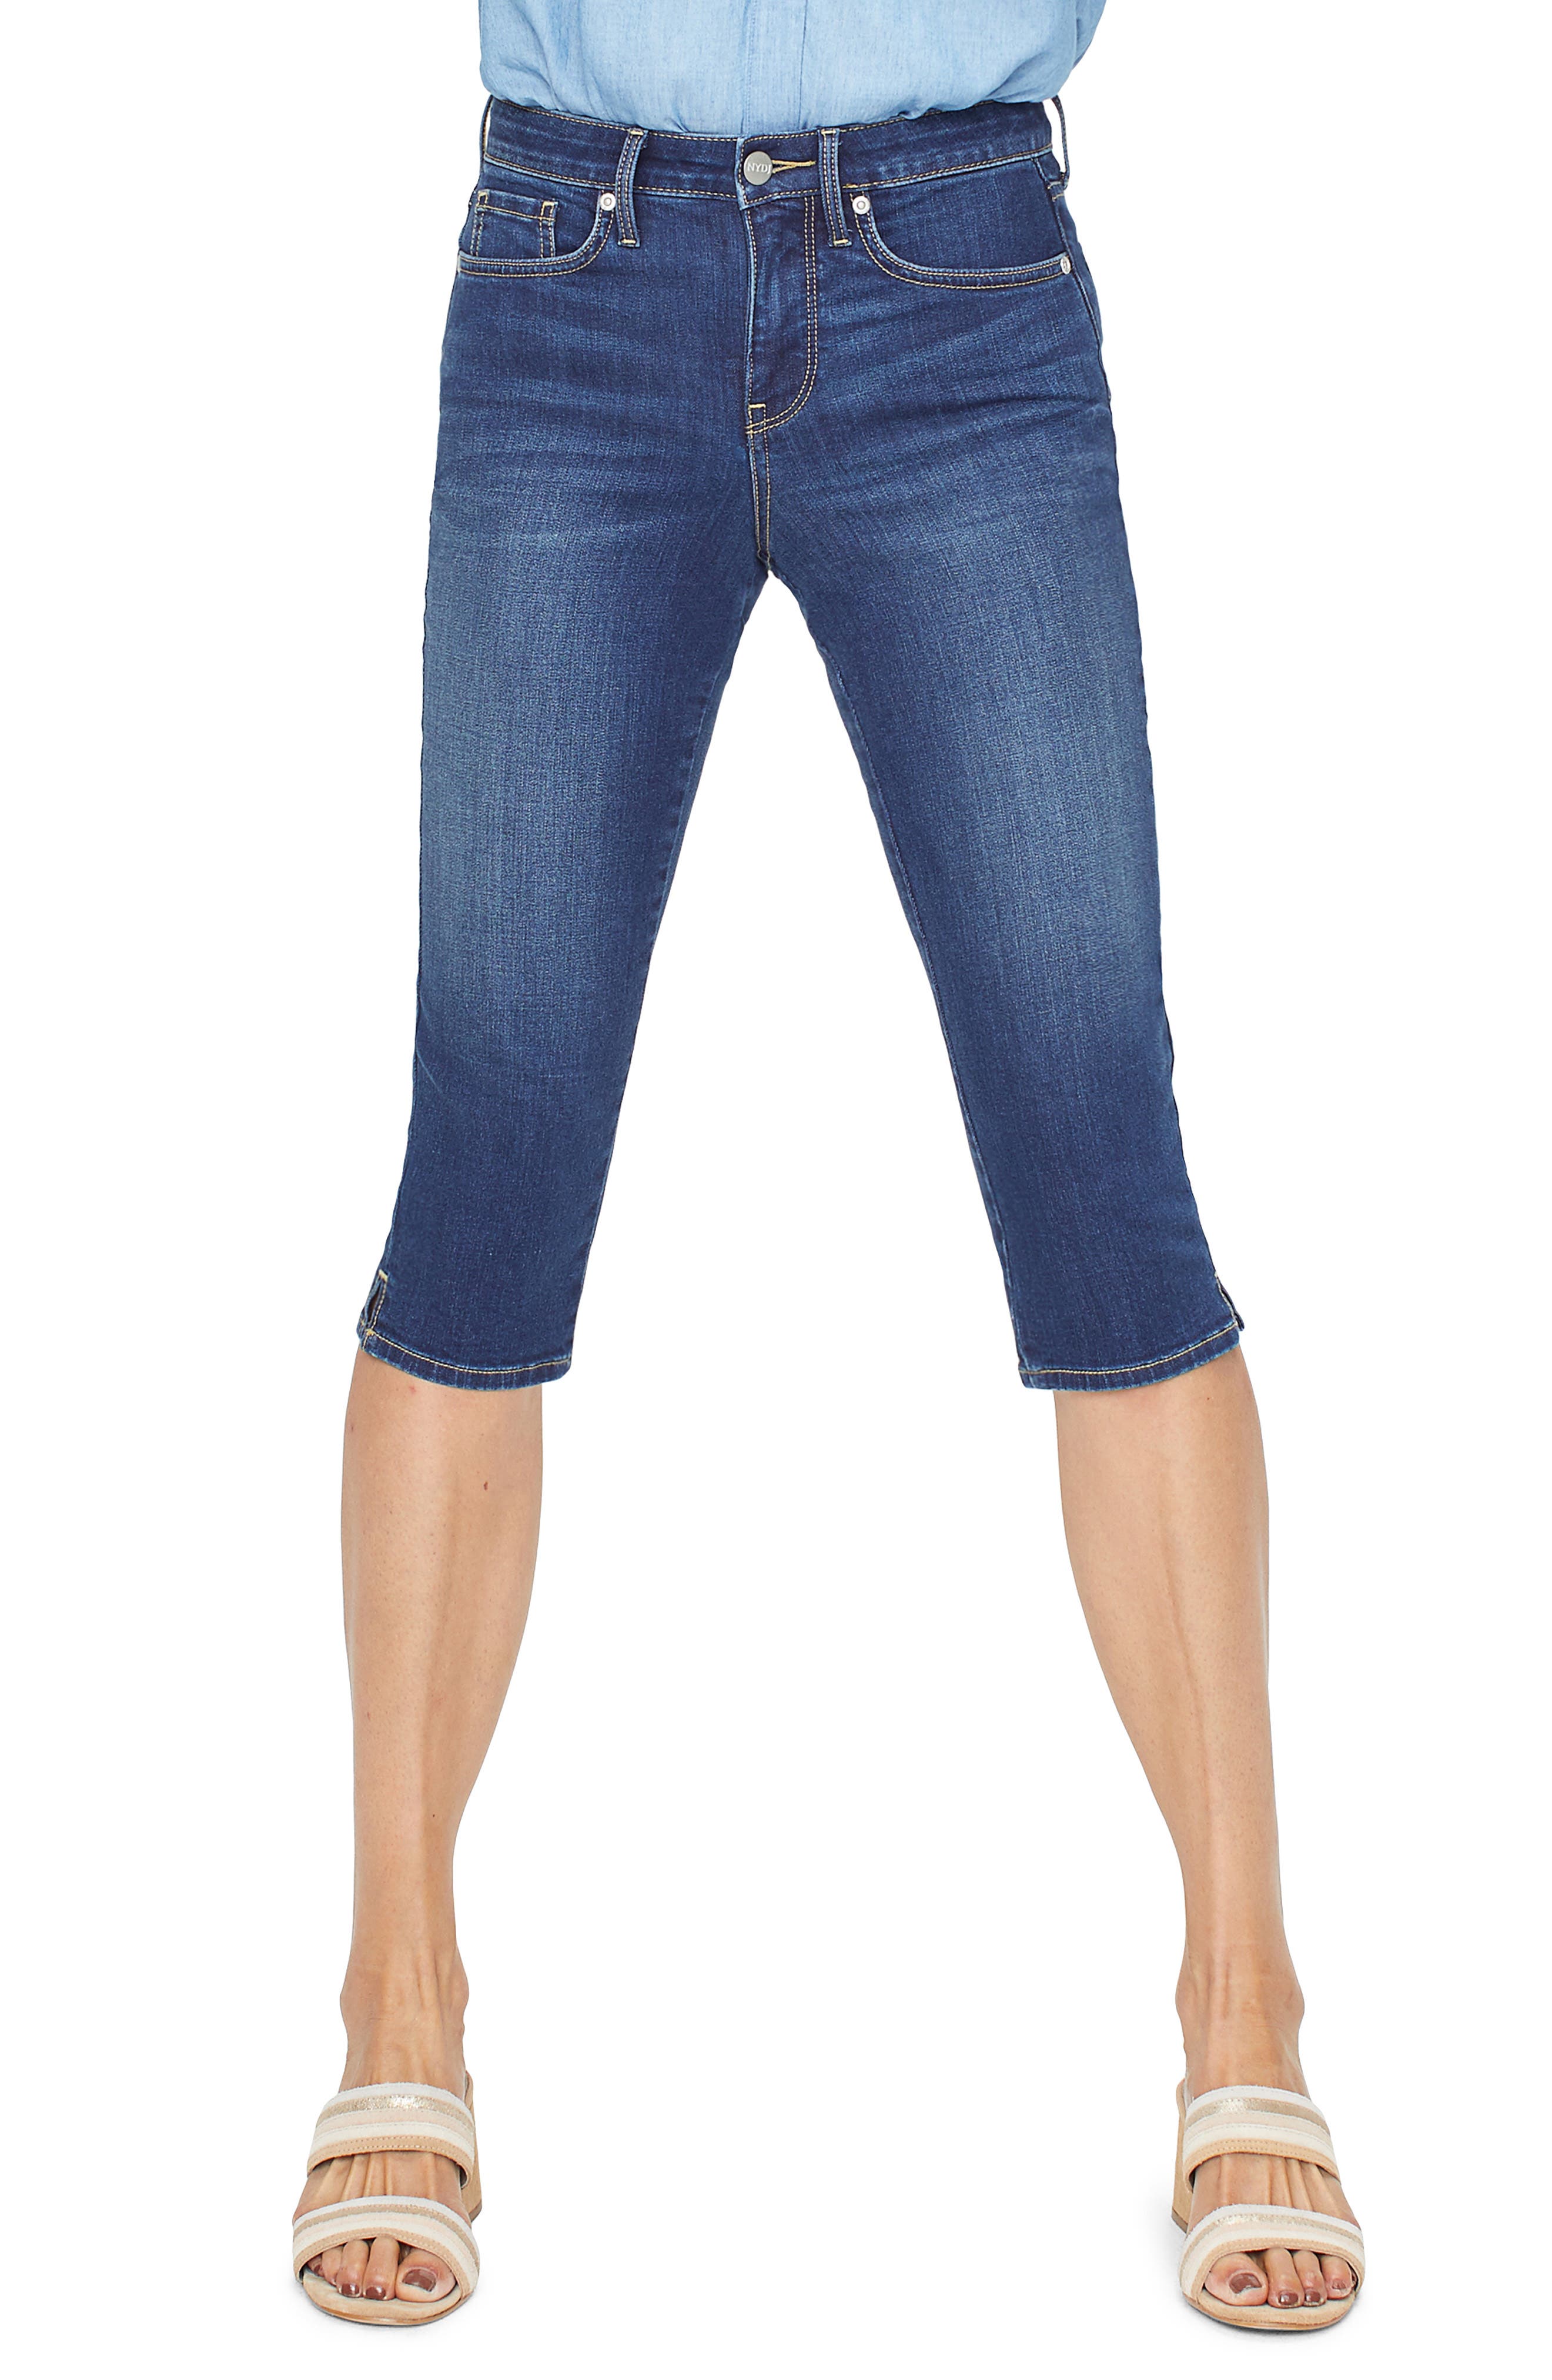 skinny capri jeans